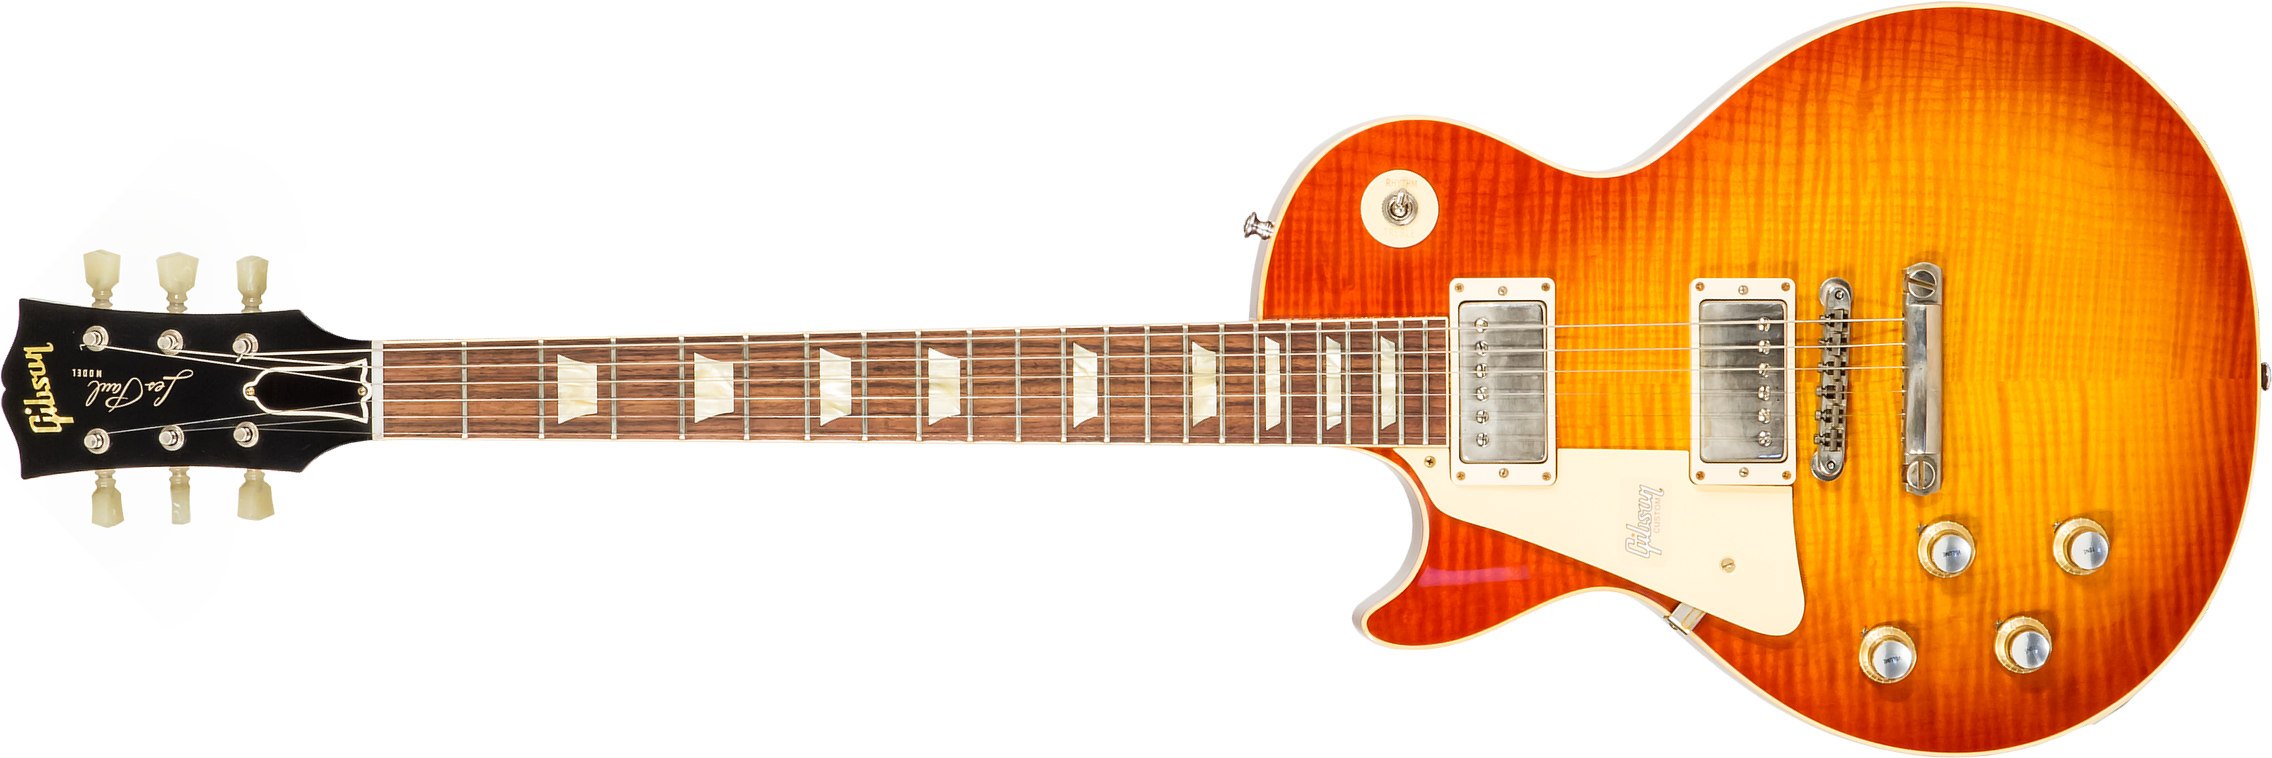 Gibson Custom Shop Les Paul Standard 1960 Reissue Lh Gaucher 2h Ht Rw #09122 - Vos Tangerine Burst - Linkshandige elektrische gitaar - Main picture